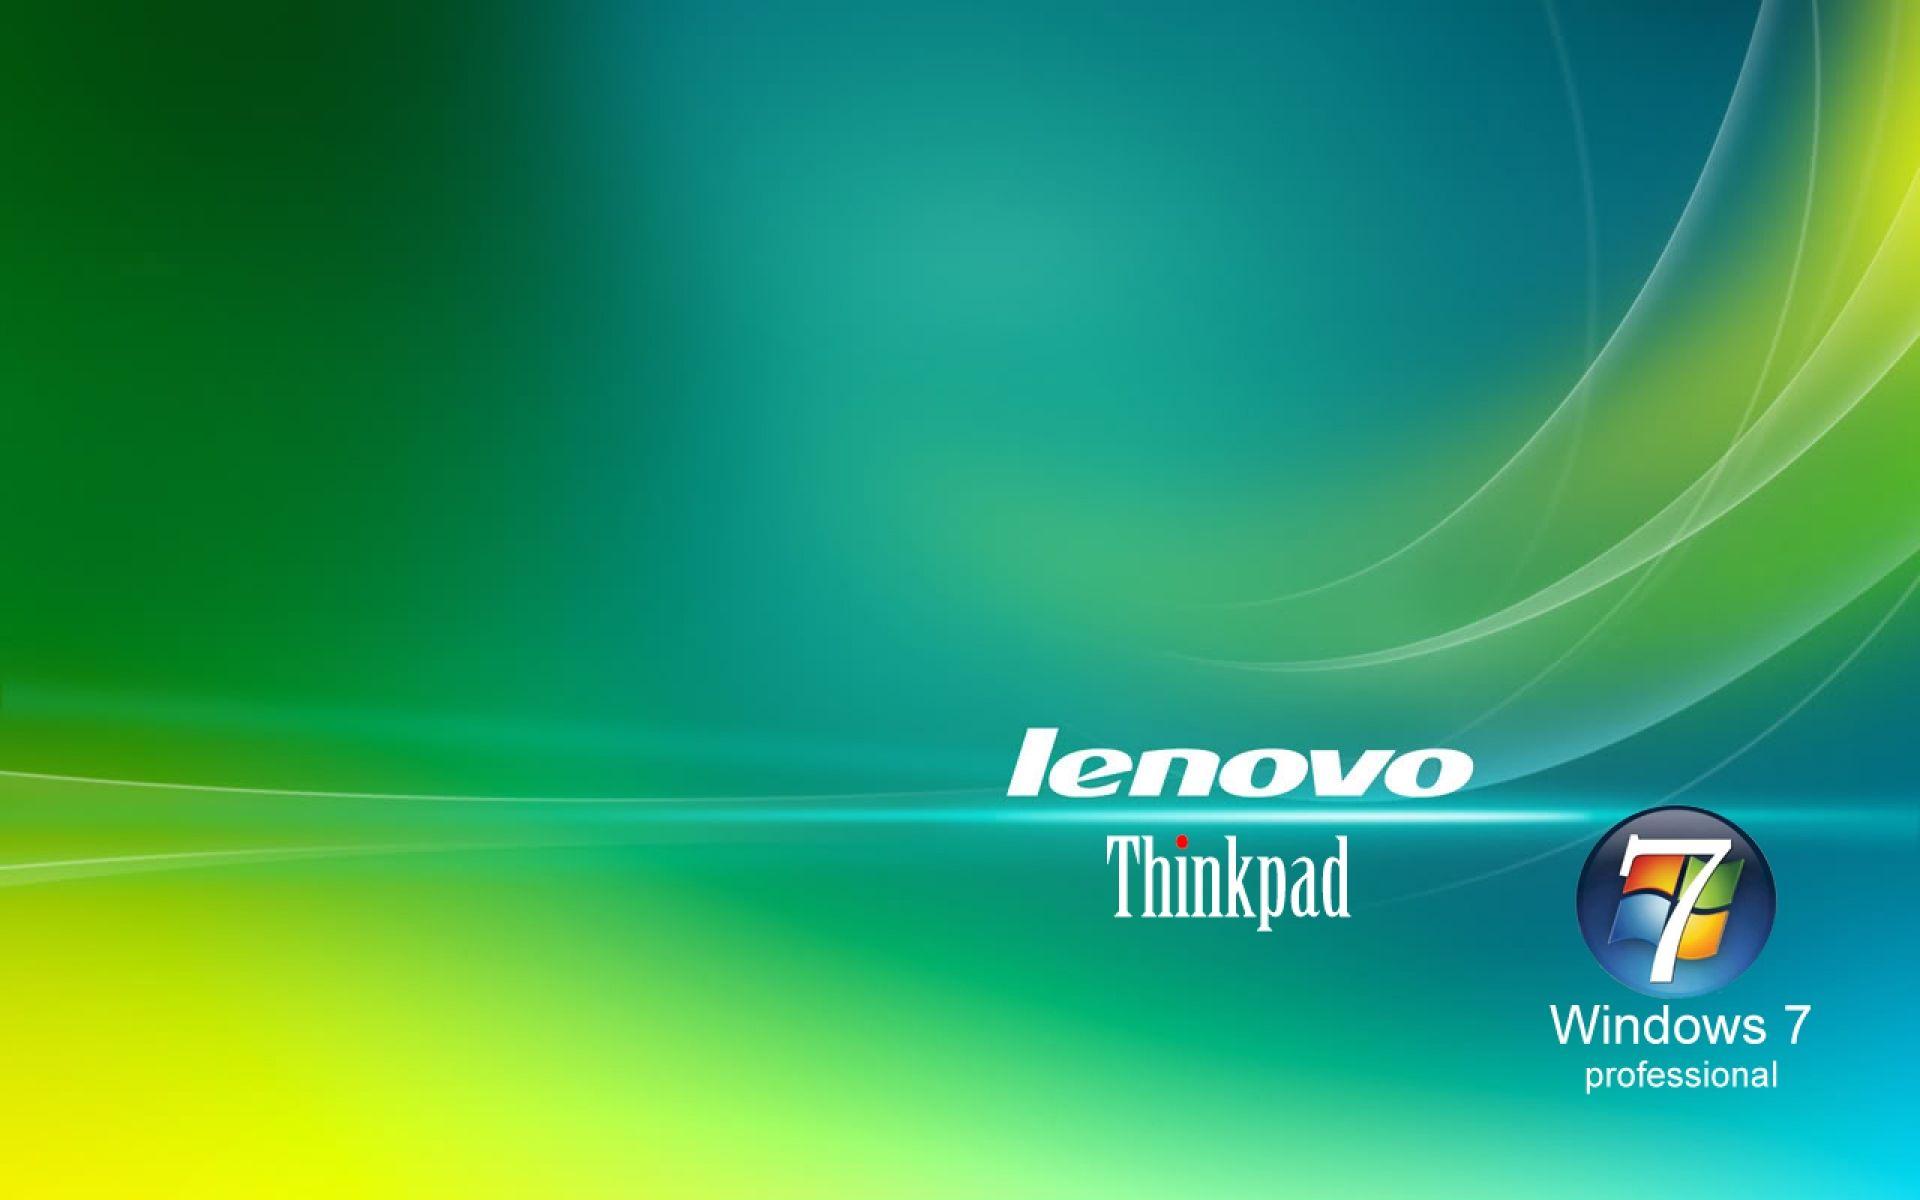 Lenovo ThinkPad Desktop Wallpaper. HD Wallpaper